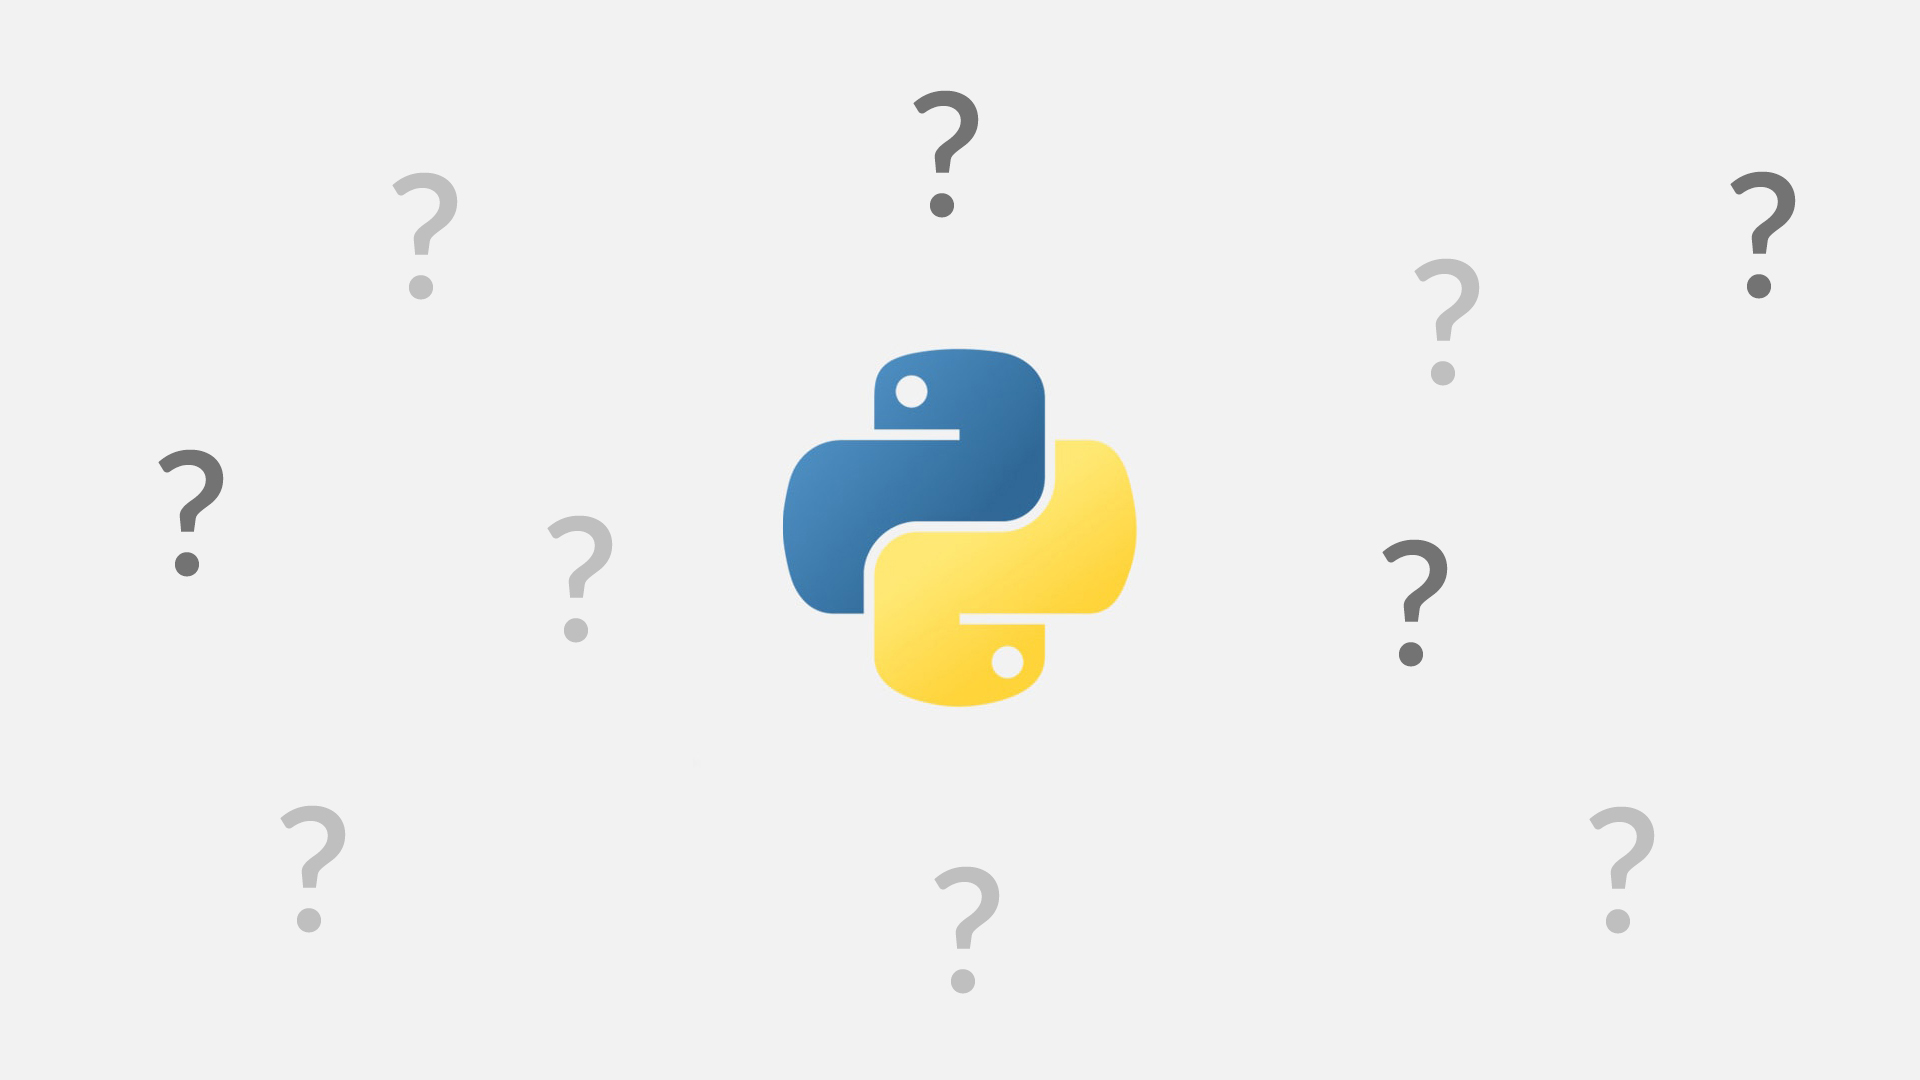 5 часто встречающихся вопросов про списки в Python